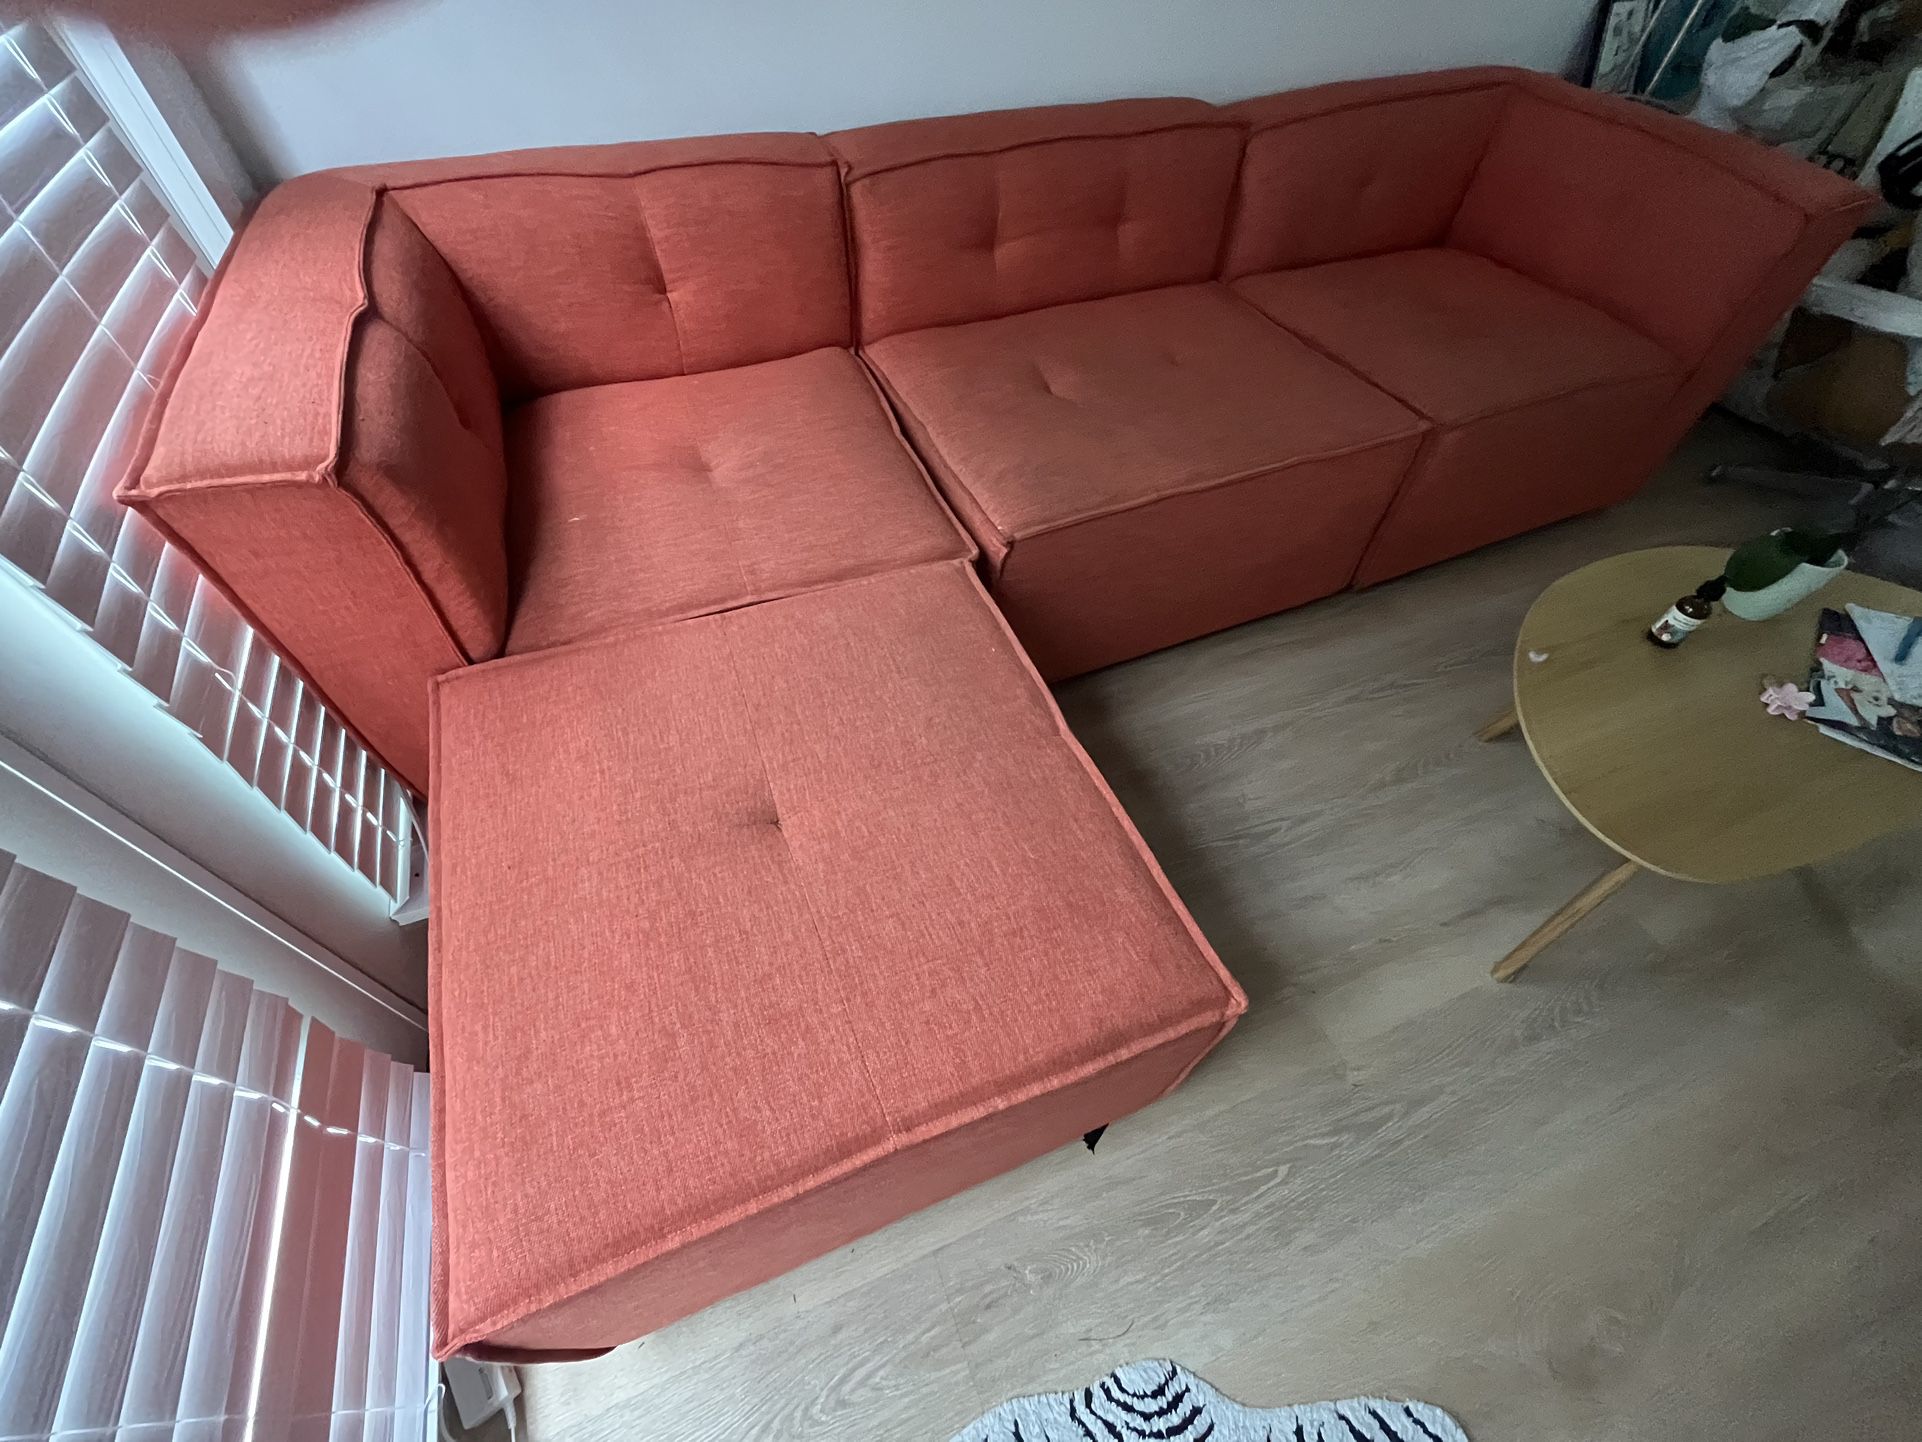 Modular Joybird sofa- Pumpkin Color -Can Deliver